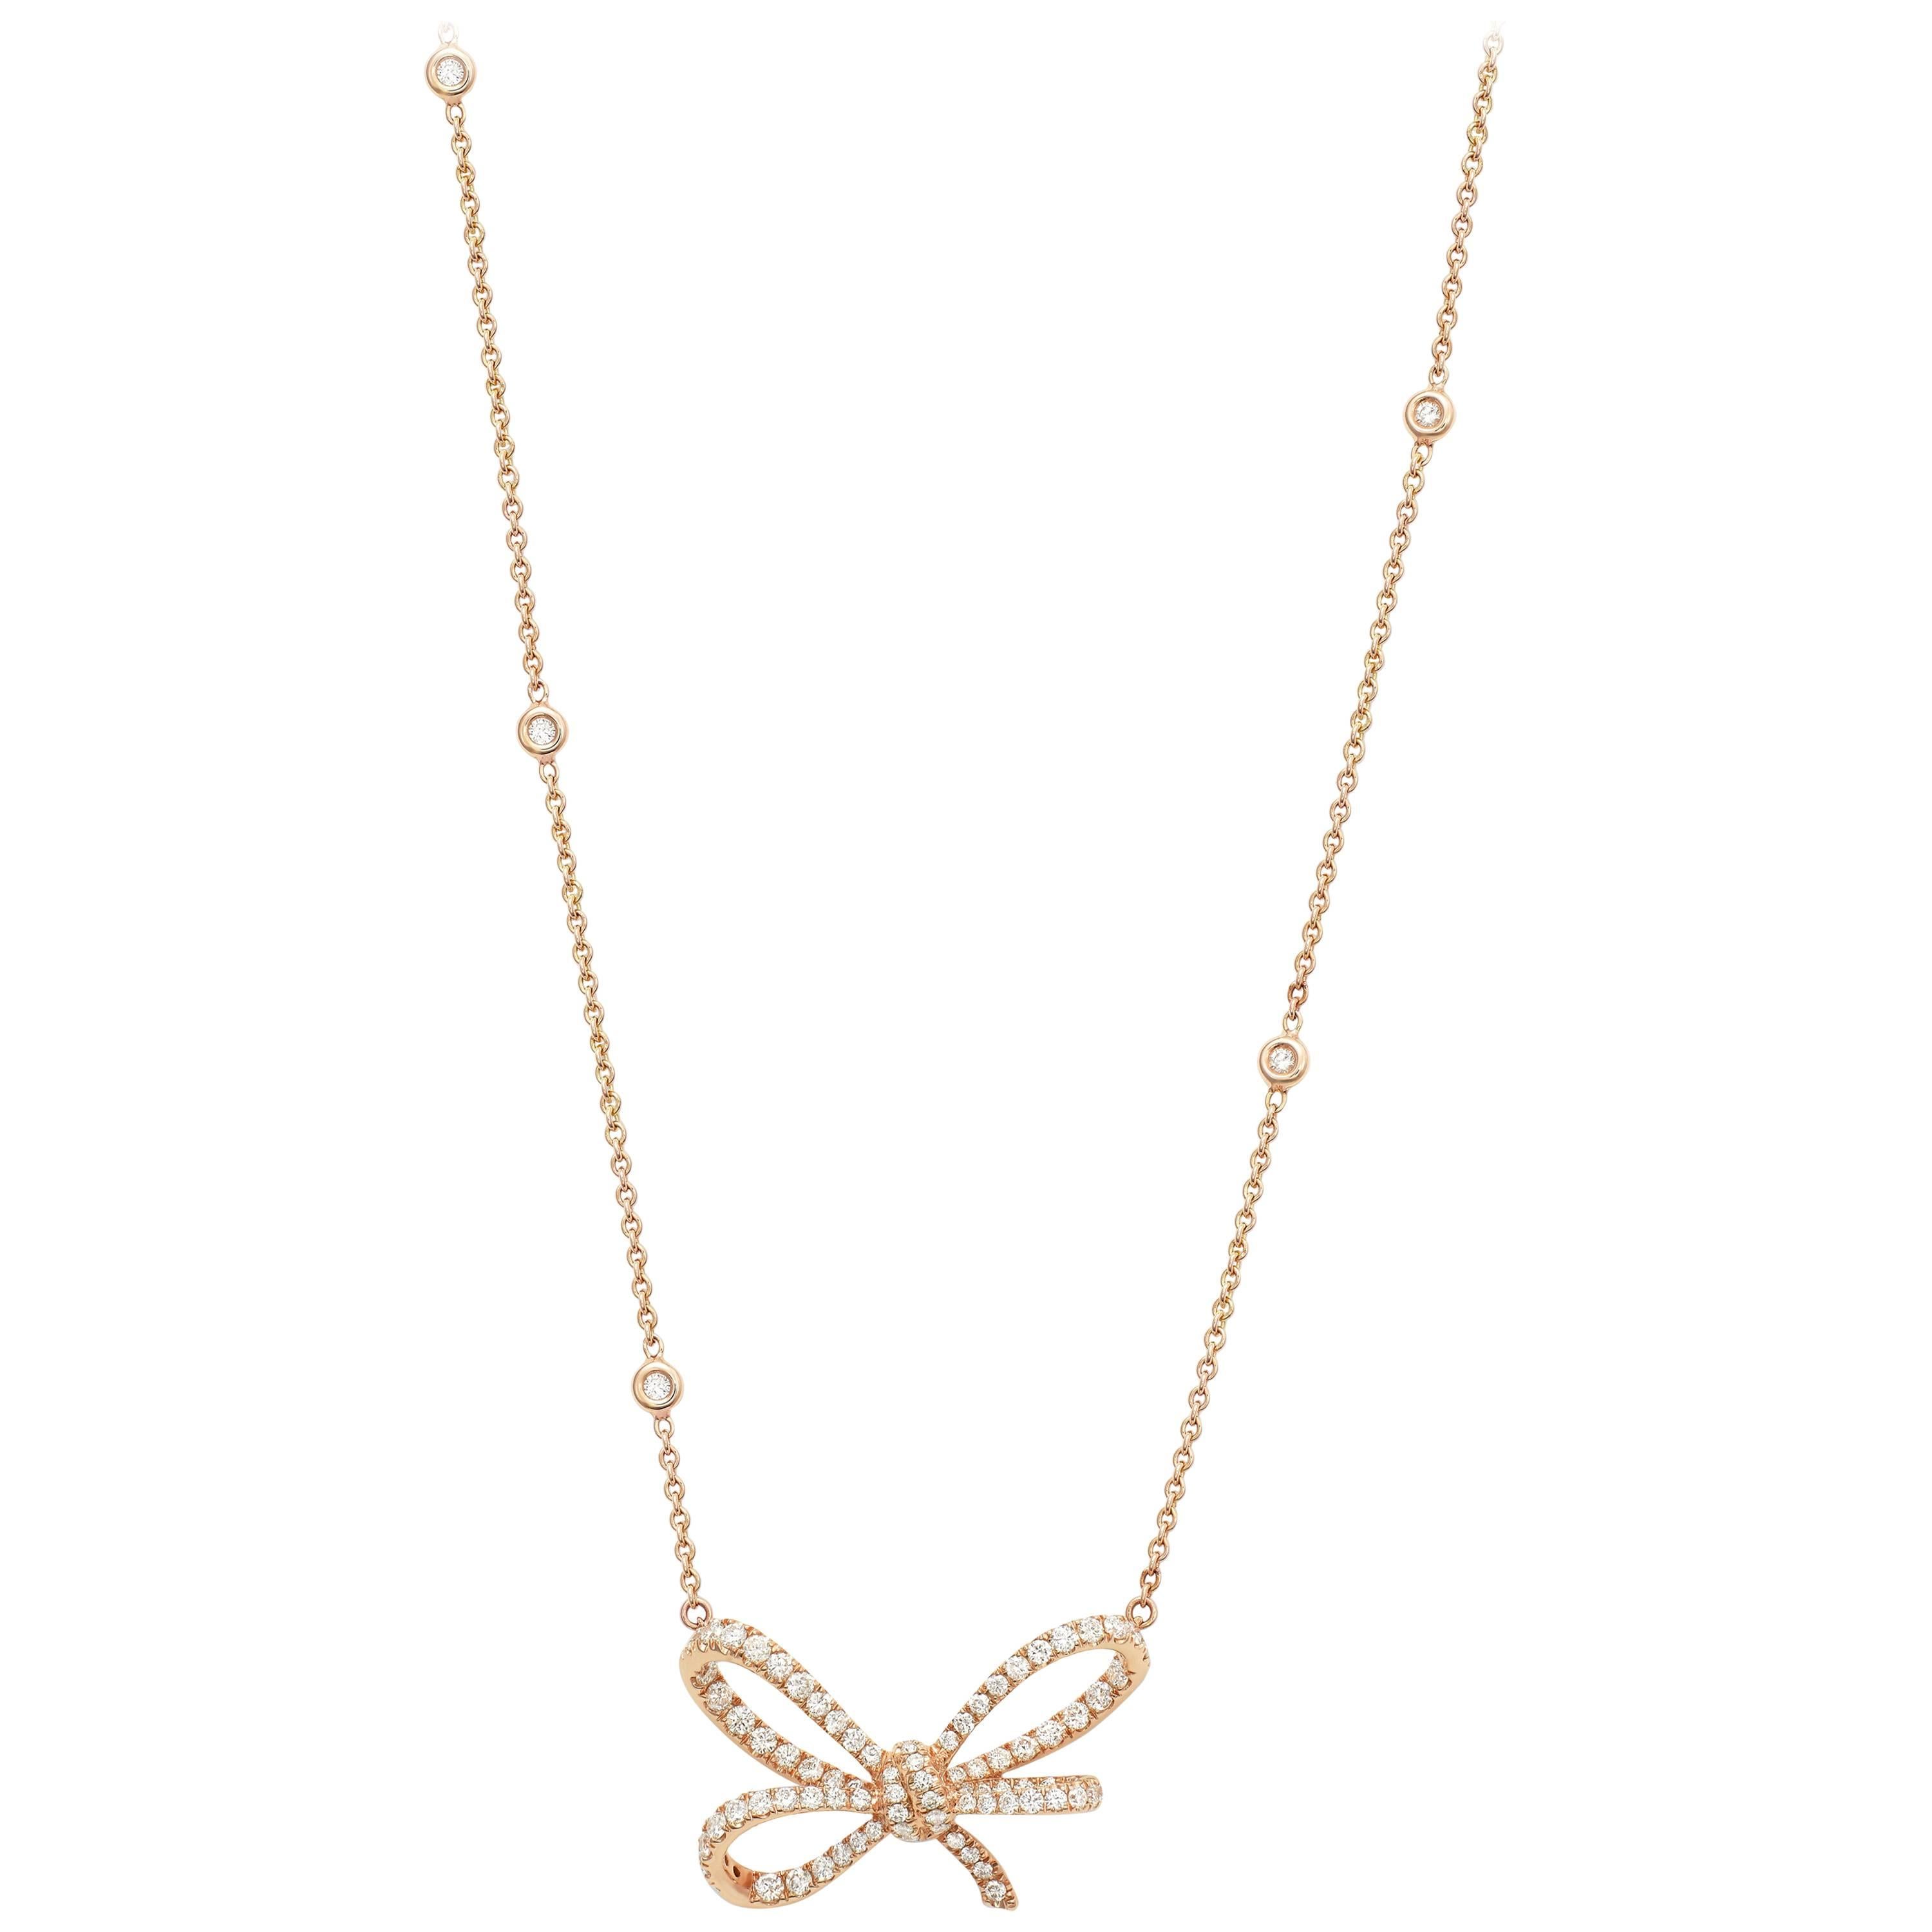 Diese wunderschöne Halskette ist Teil von Lyla's Bow, der ersten von Vania Leles entworfenen Collection'S.
Diese Kollektion verkörpert den Geist des VANLELES-Designs, ist feminin und zeitlos, ein Muss für Schmuckliebhaber und das perfekte Geschenk